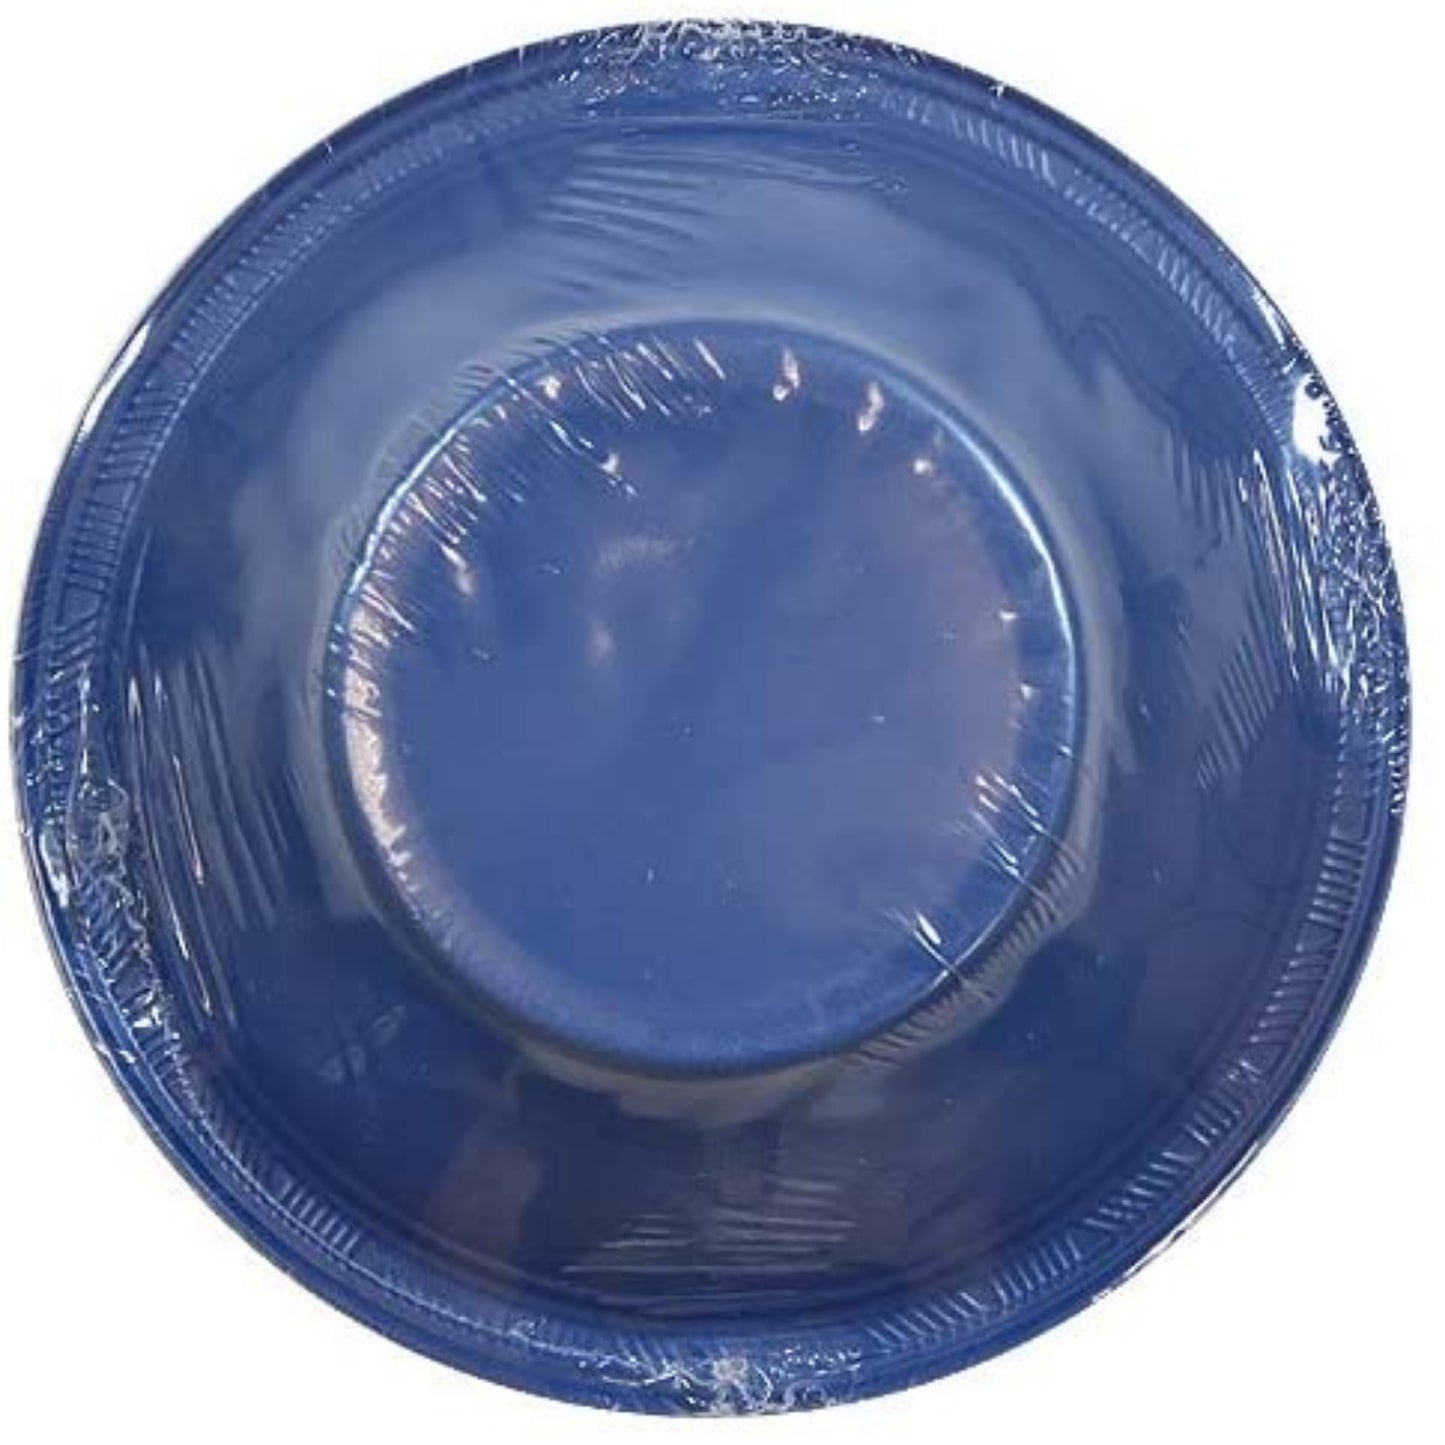 Hanna K. Signature Collection Plastic Bowl Blue 12 oz Bowls Party Dimensions   